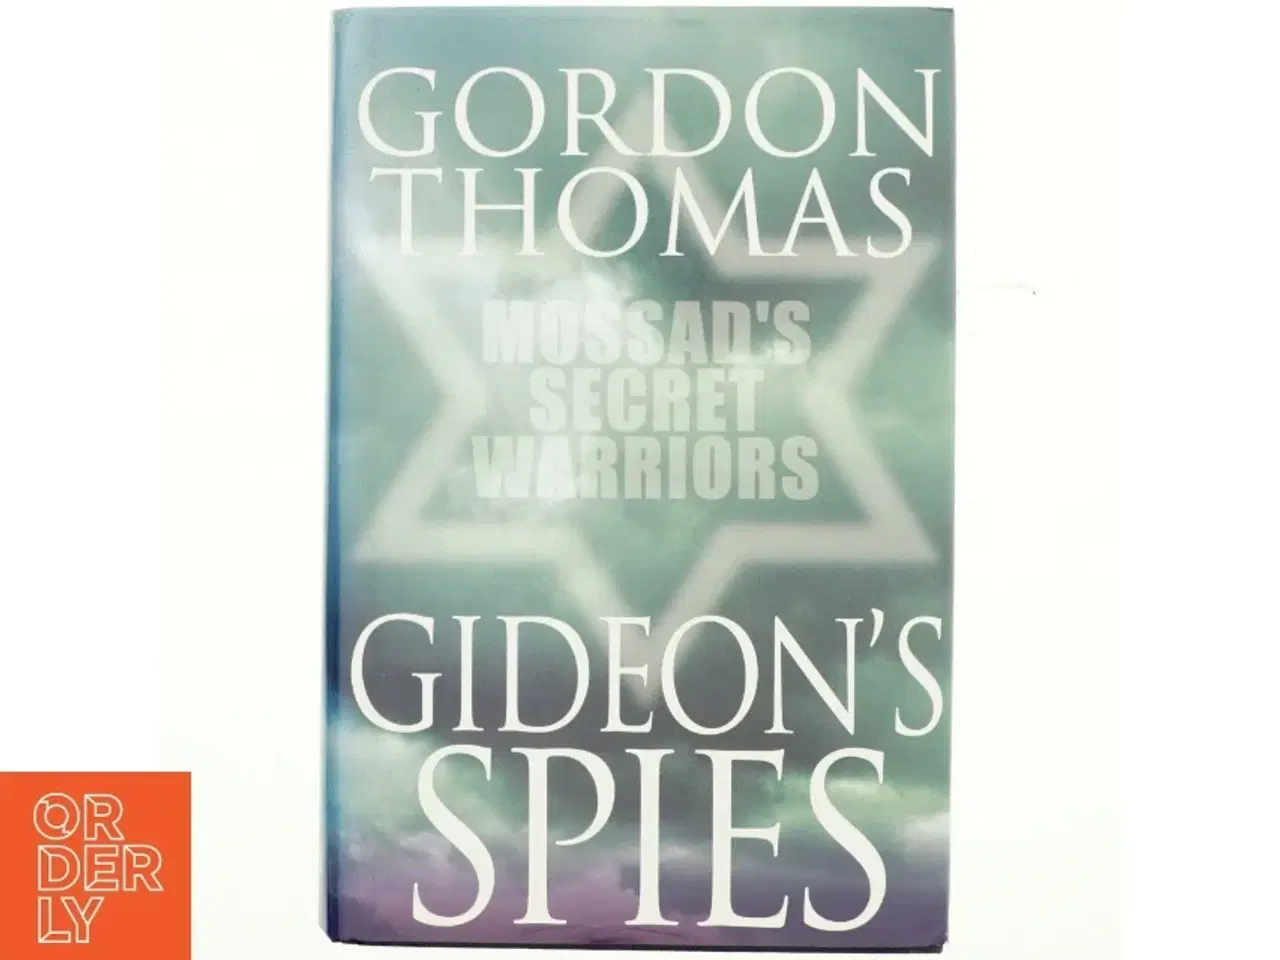 Billede 1 - Gideon's spies : the secret history of the Mossad af Gordon Thomas (Bog)